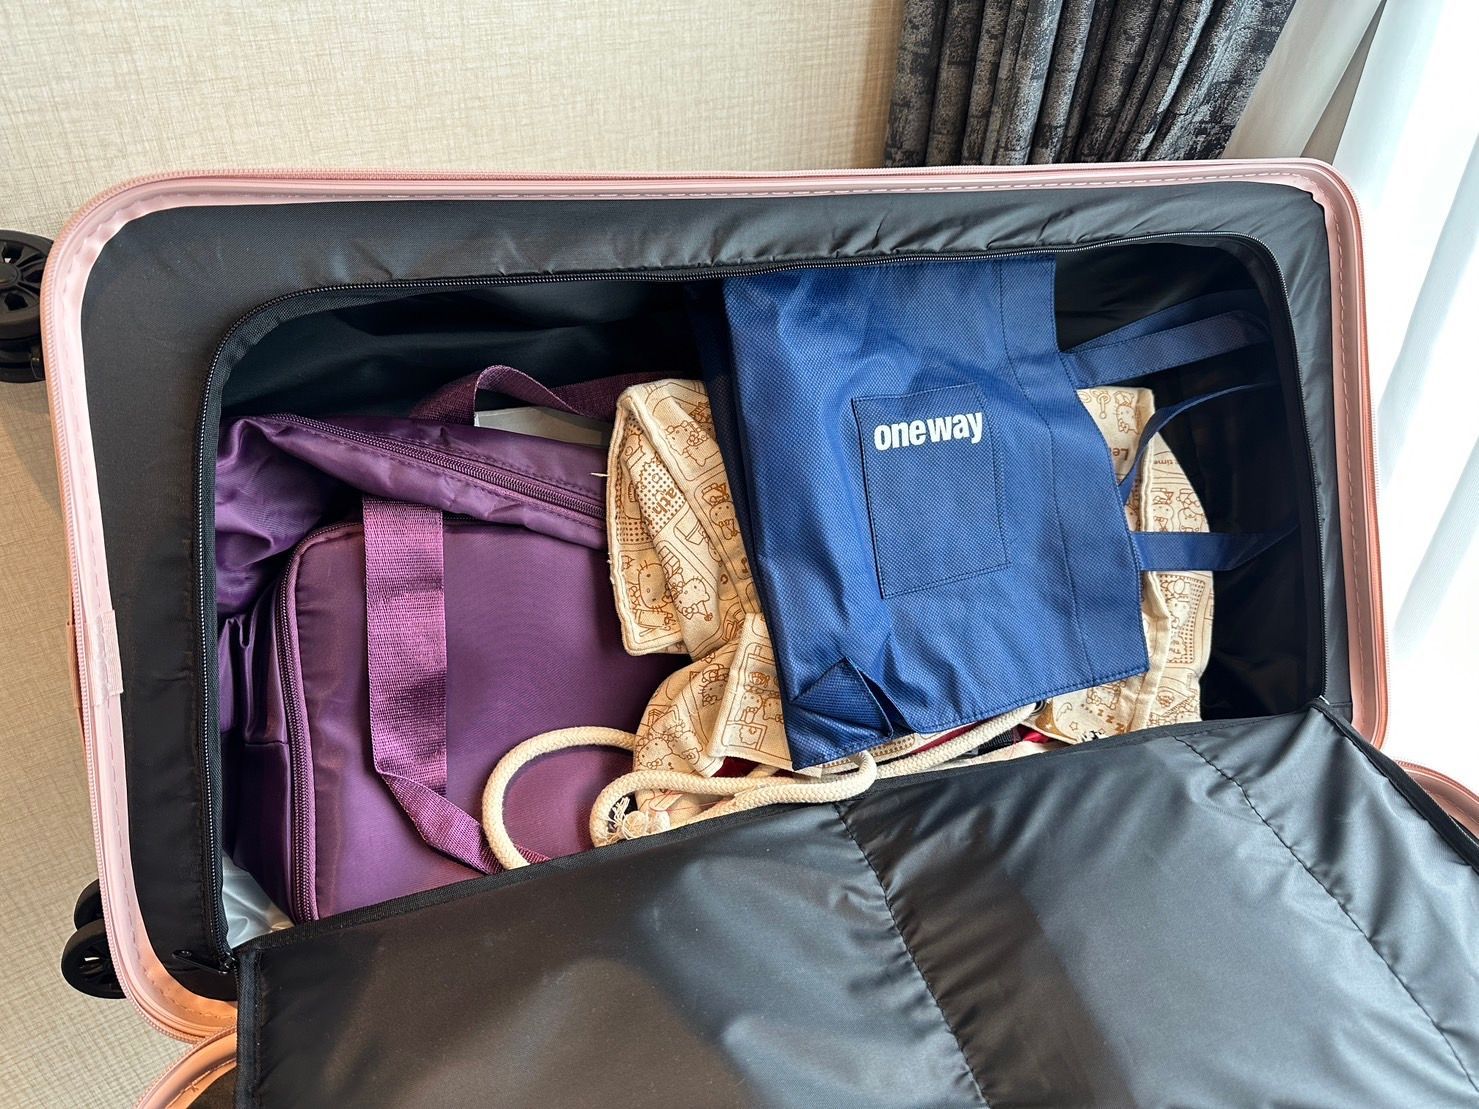 【好物推薦】Doris極o能裝行李箱 為旅遊而生的行李箱 出